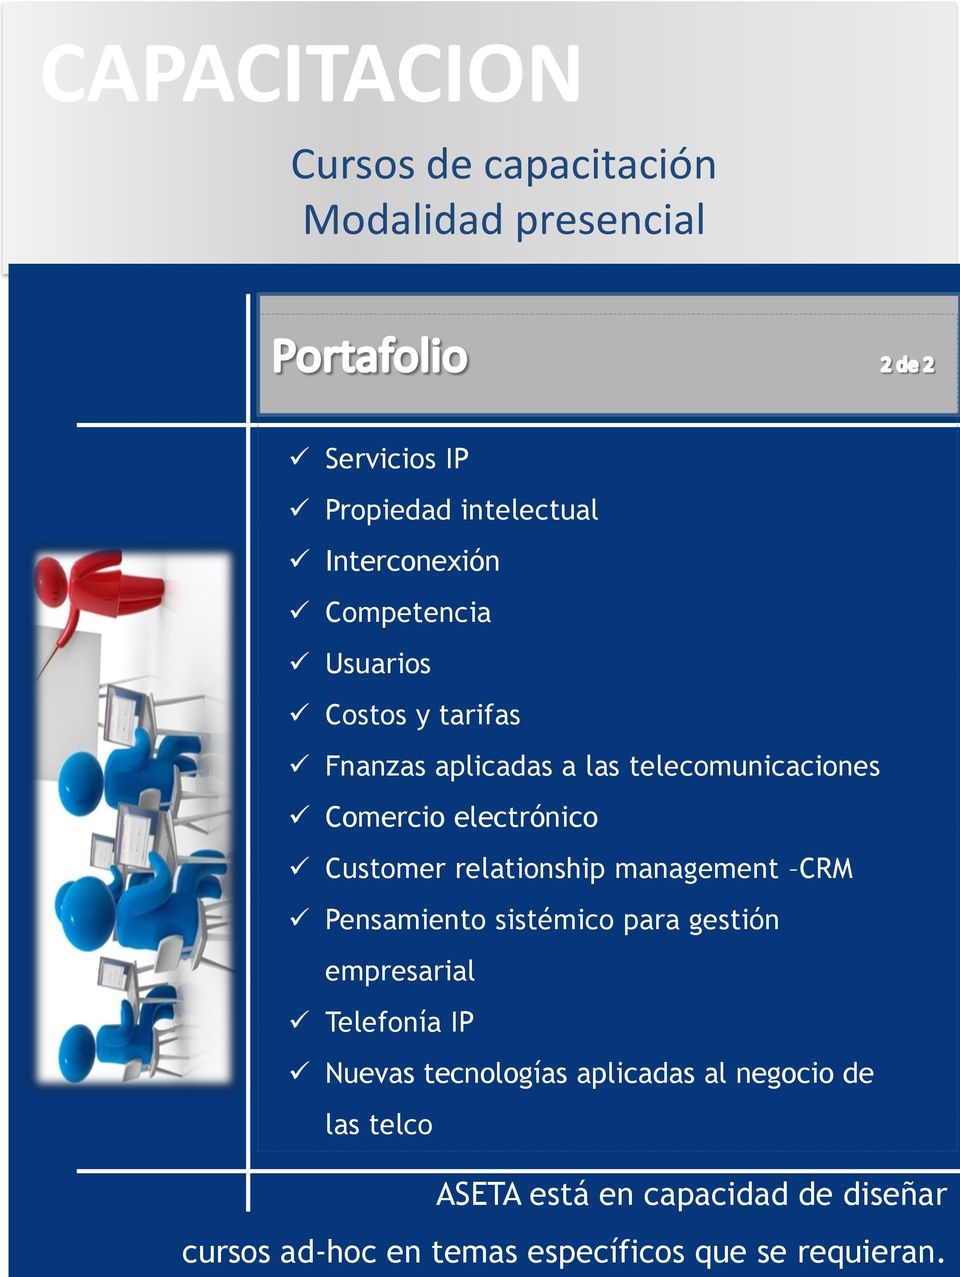 relationship management CRM Pensamiento sistémico para gestión empresarial Telefonía IP Nuevas tecnologías